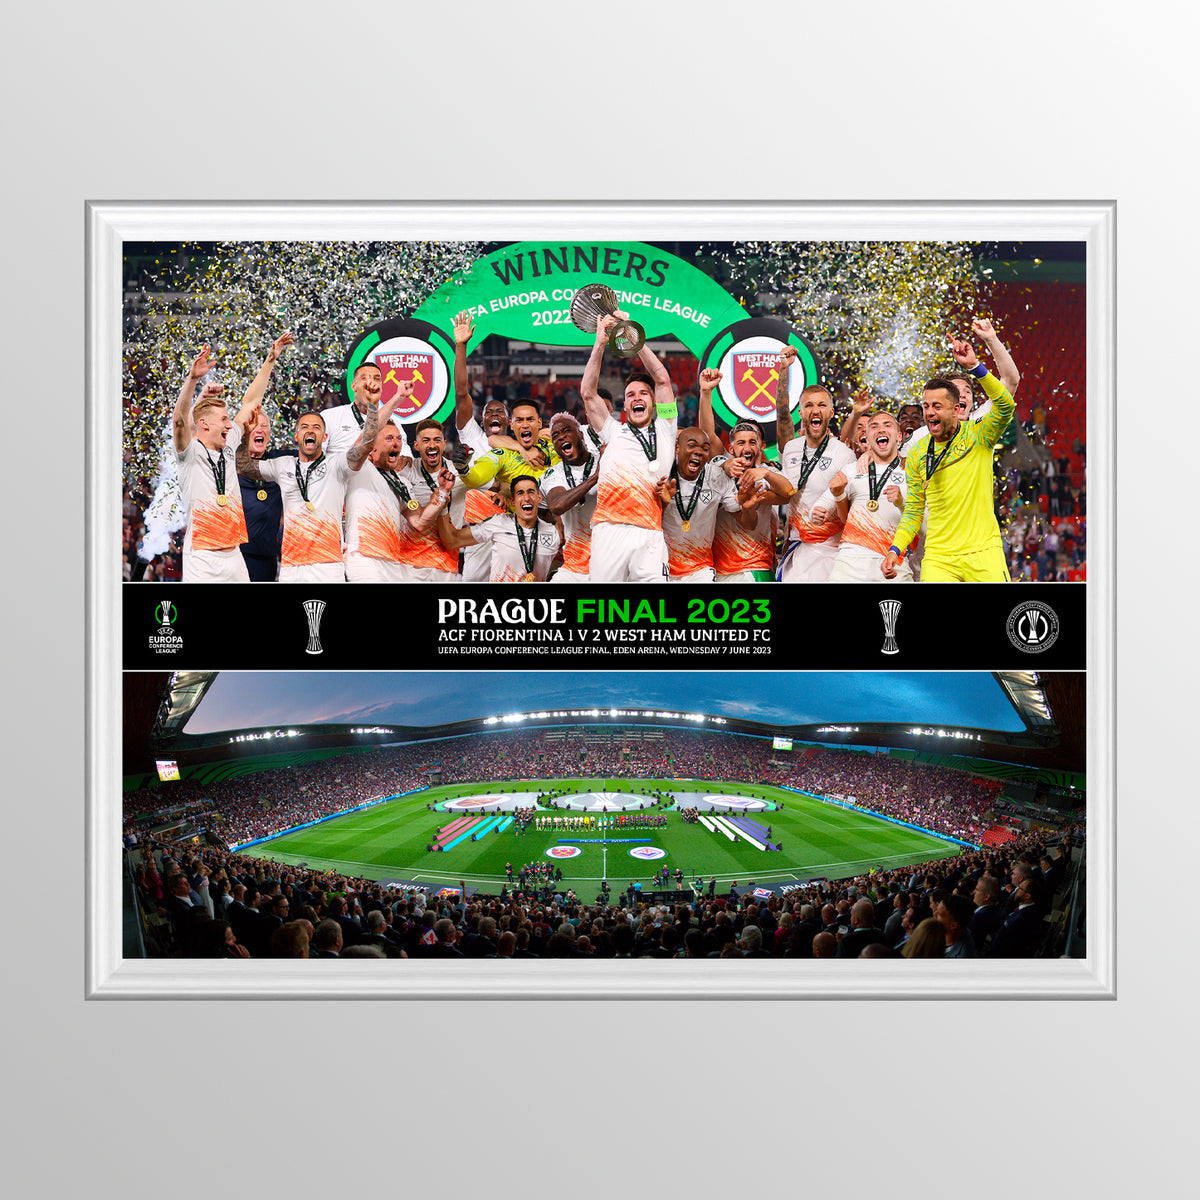 Montaggio celebrativo della finale di Praga della UEFA Europa Conference League 2023 con sollevamento dei trofei e formazione panoramica